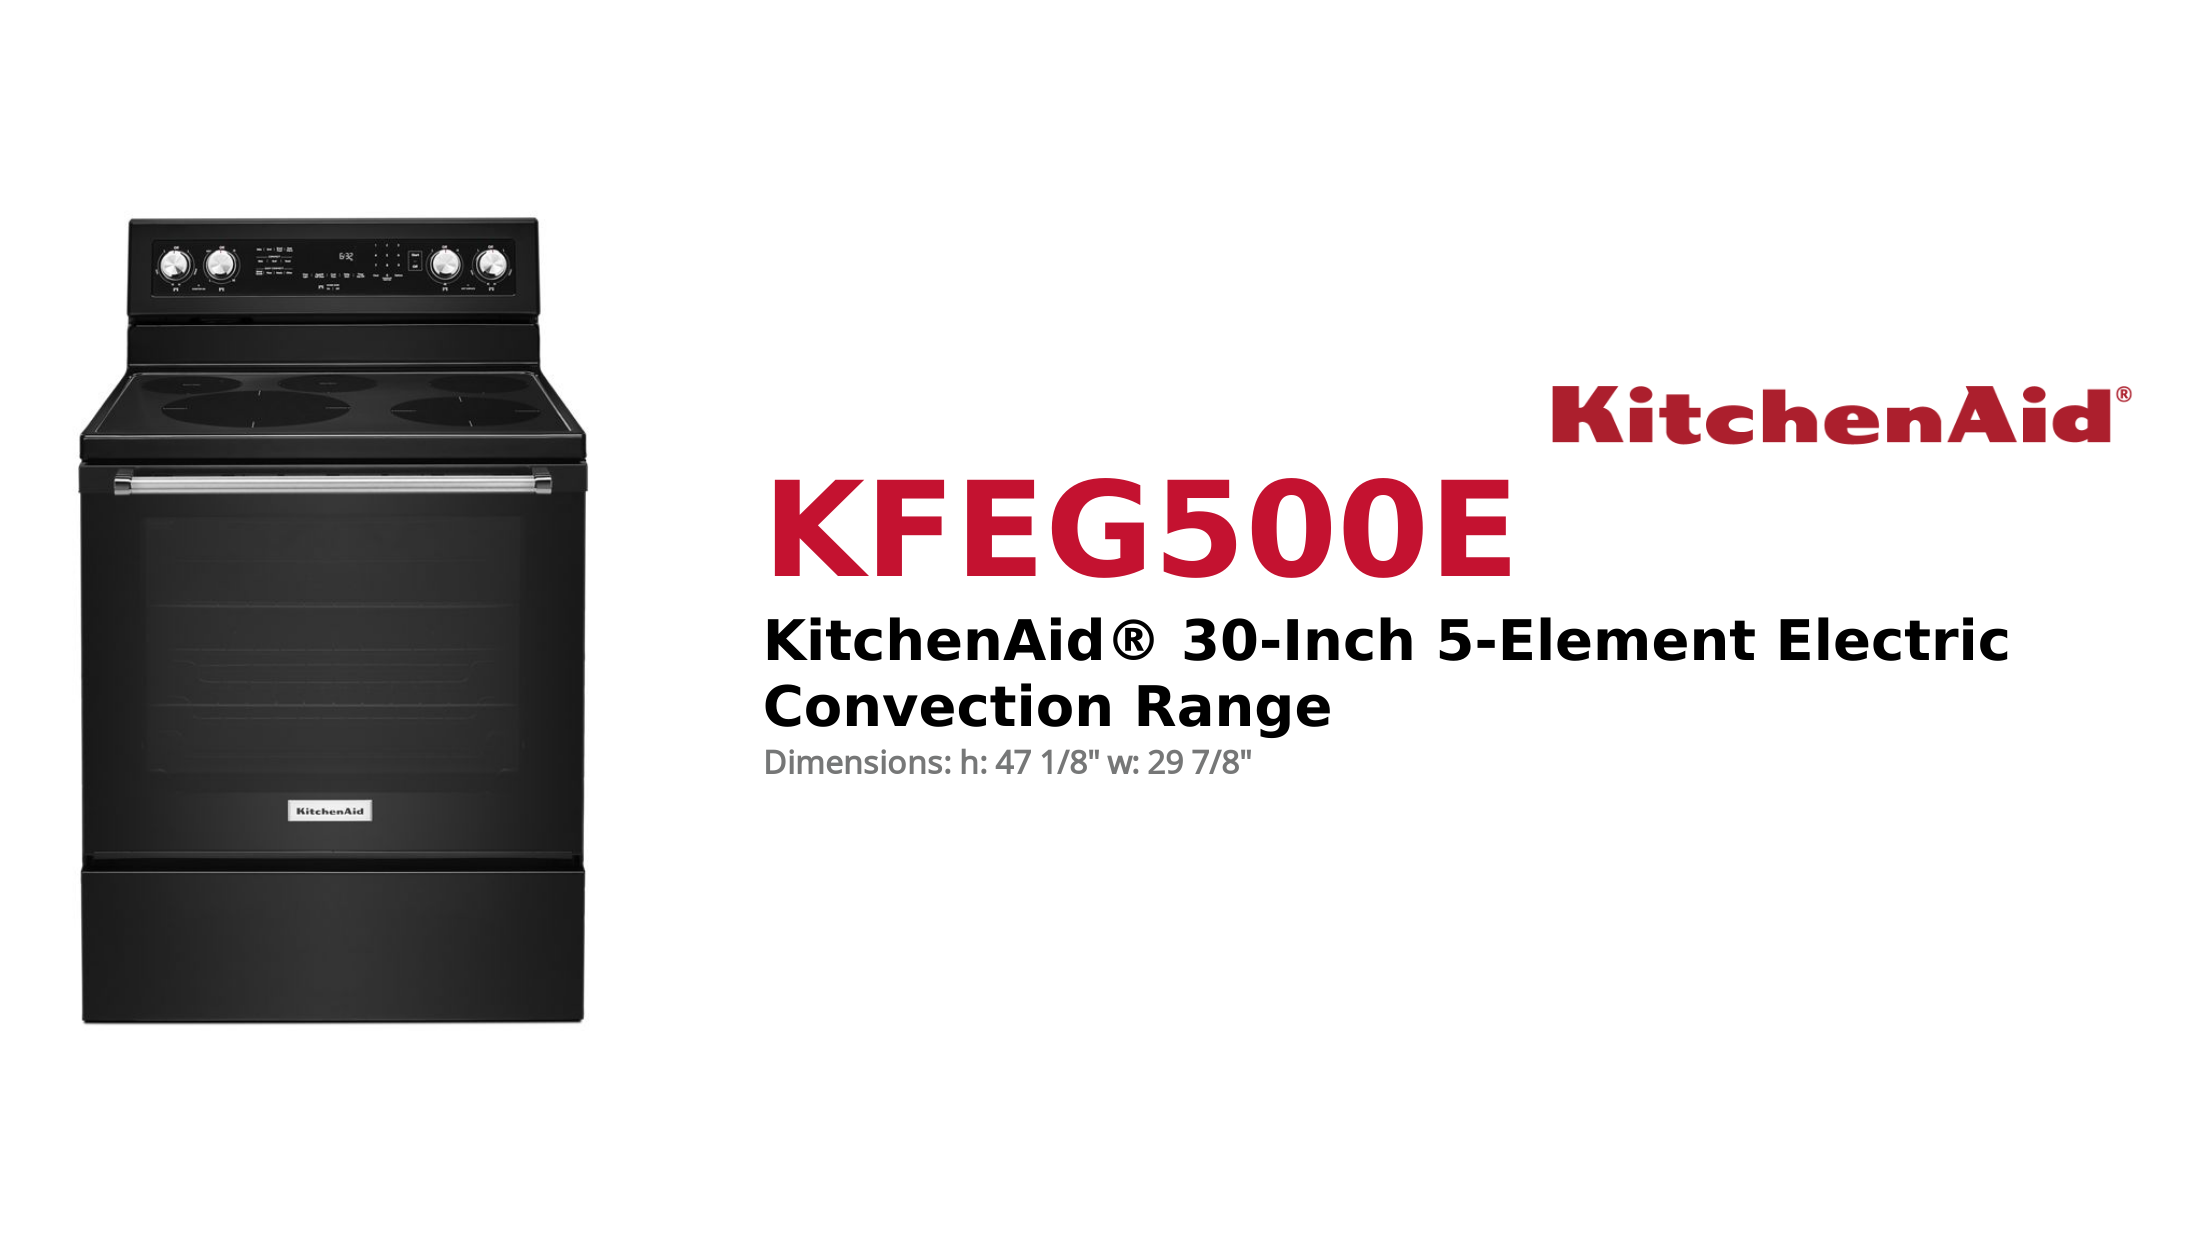 KitchenAid® 30-Inch 5-Element Electric Convection Range